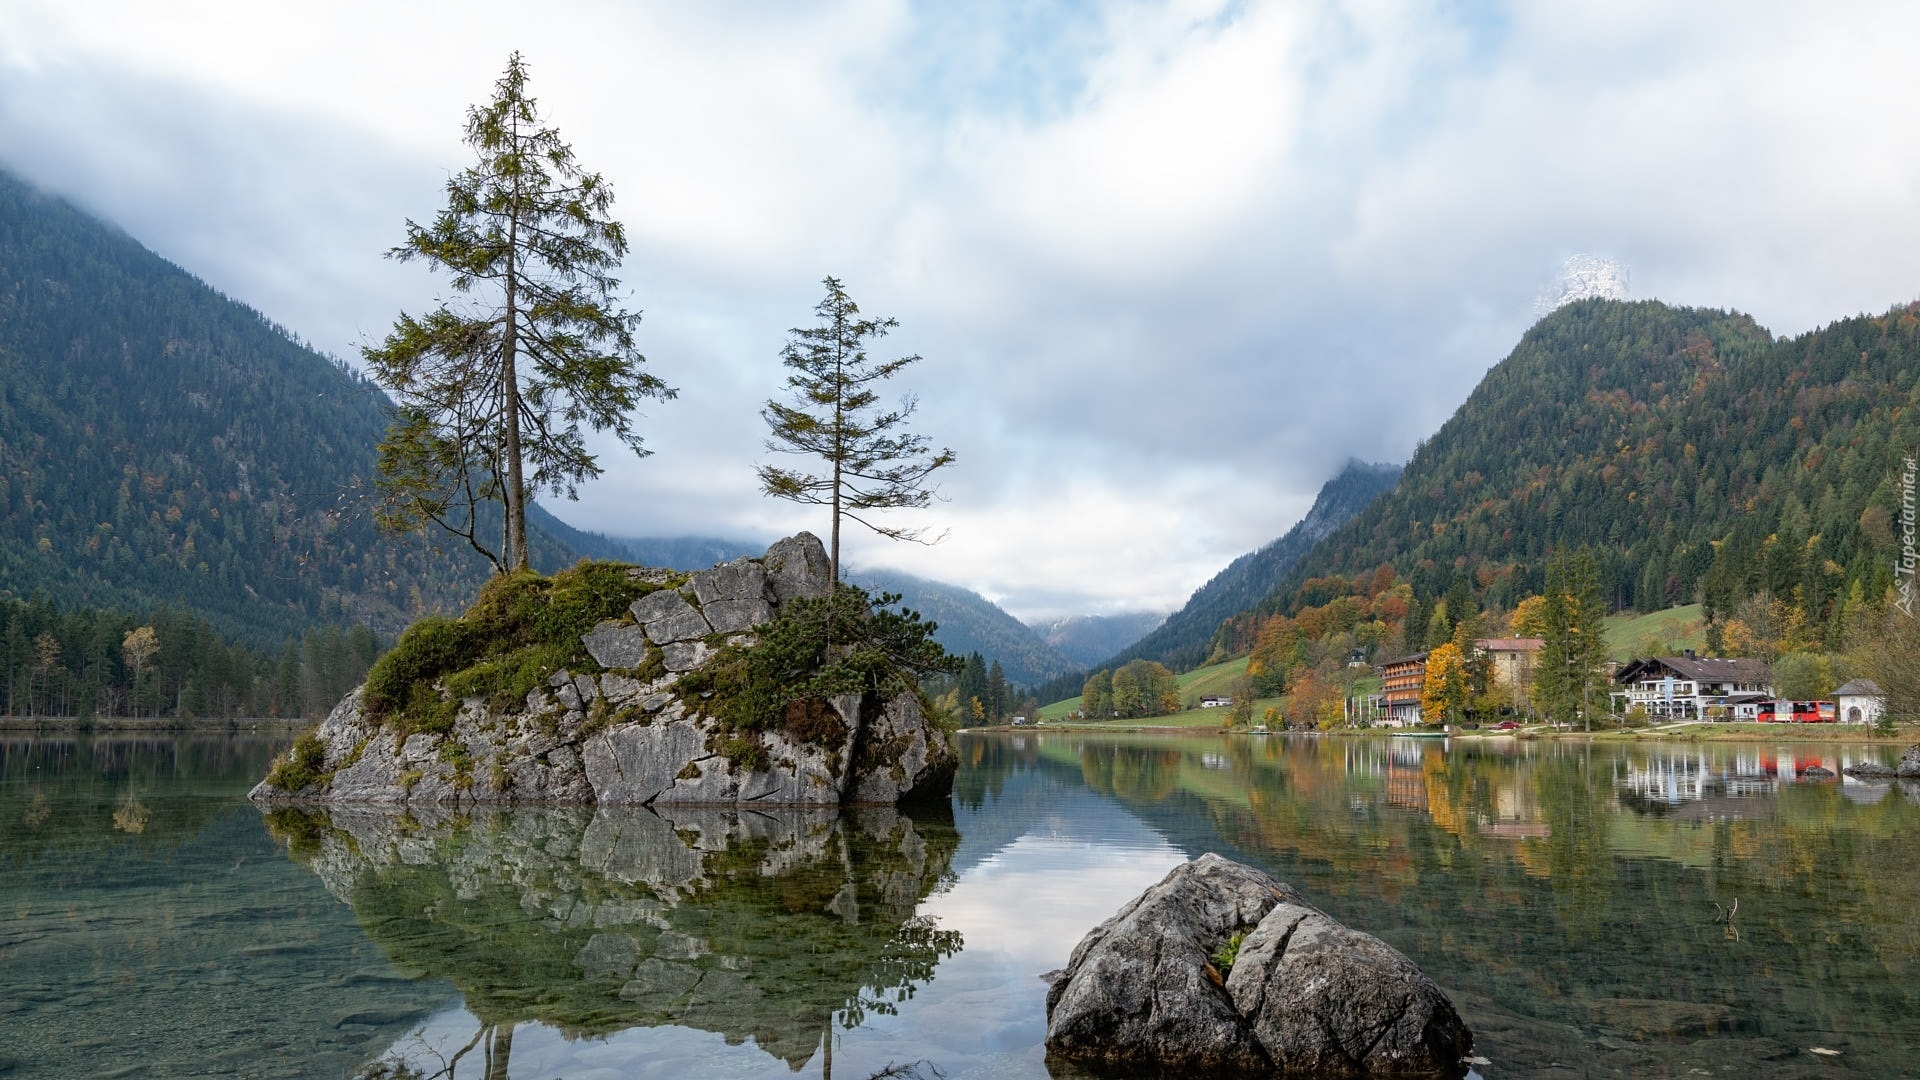 Zalesione, Góry, Jezioro Hintersee, Skały, Drzewa, Domy, Bawaria, Niemcy